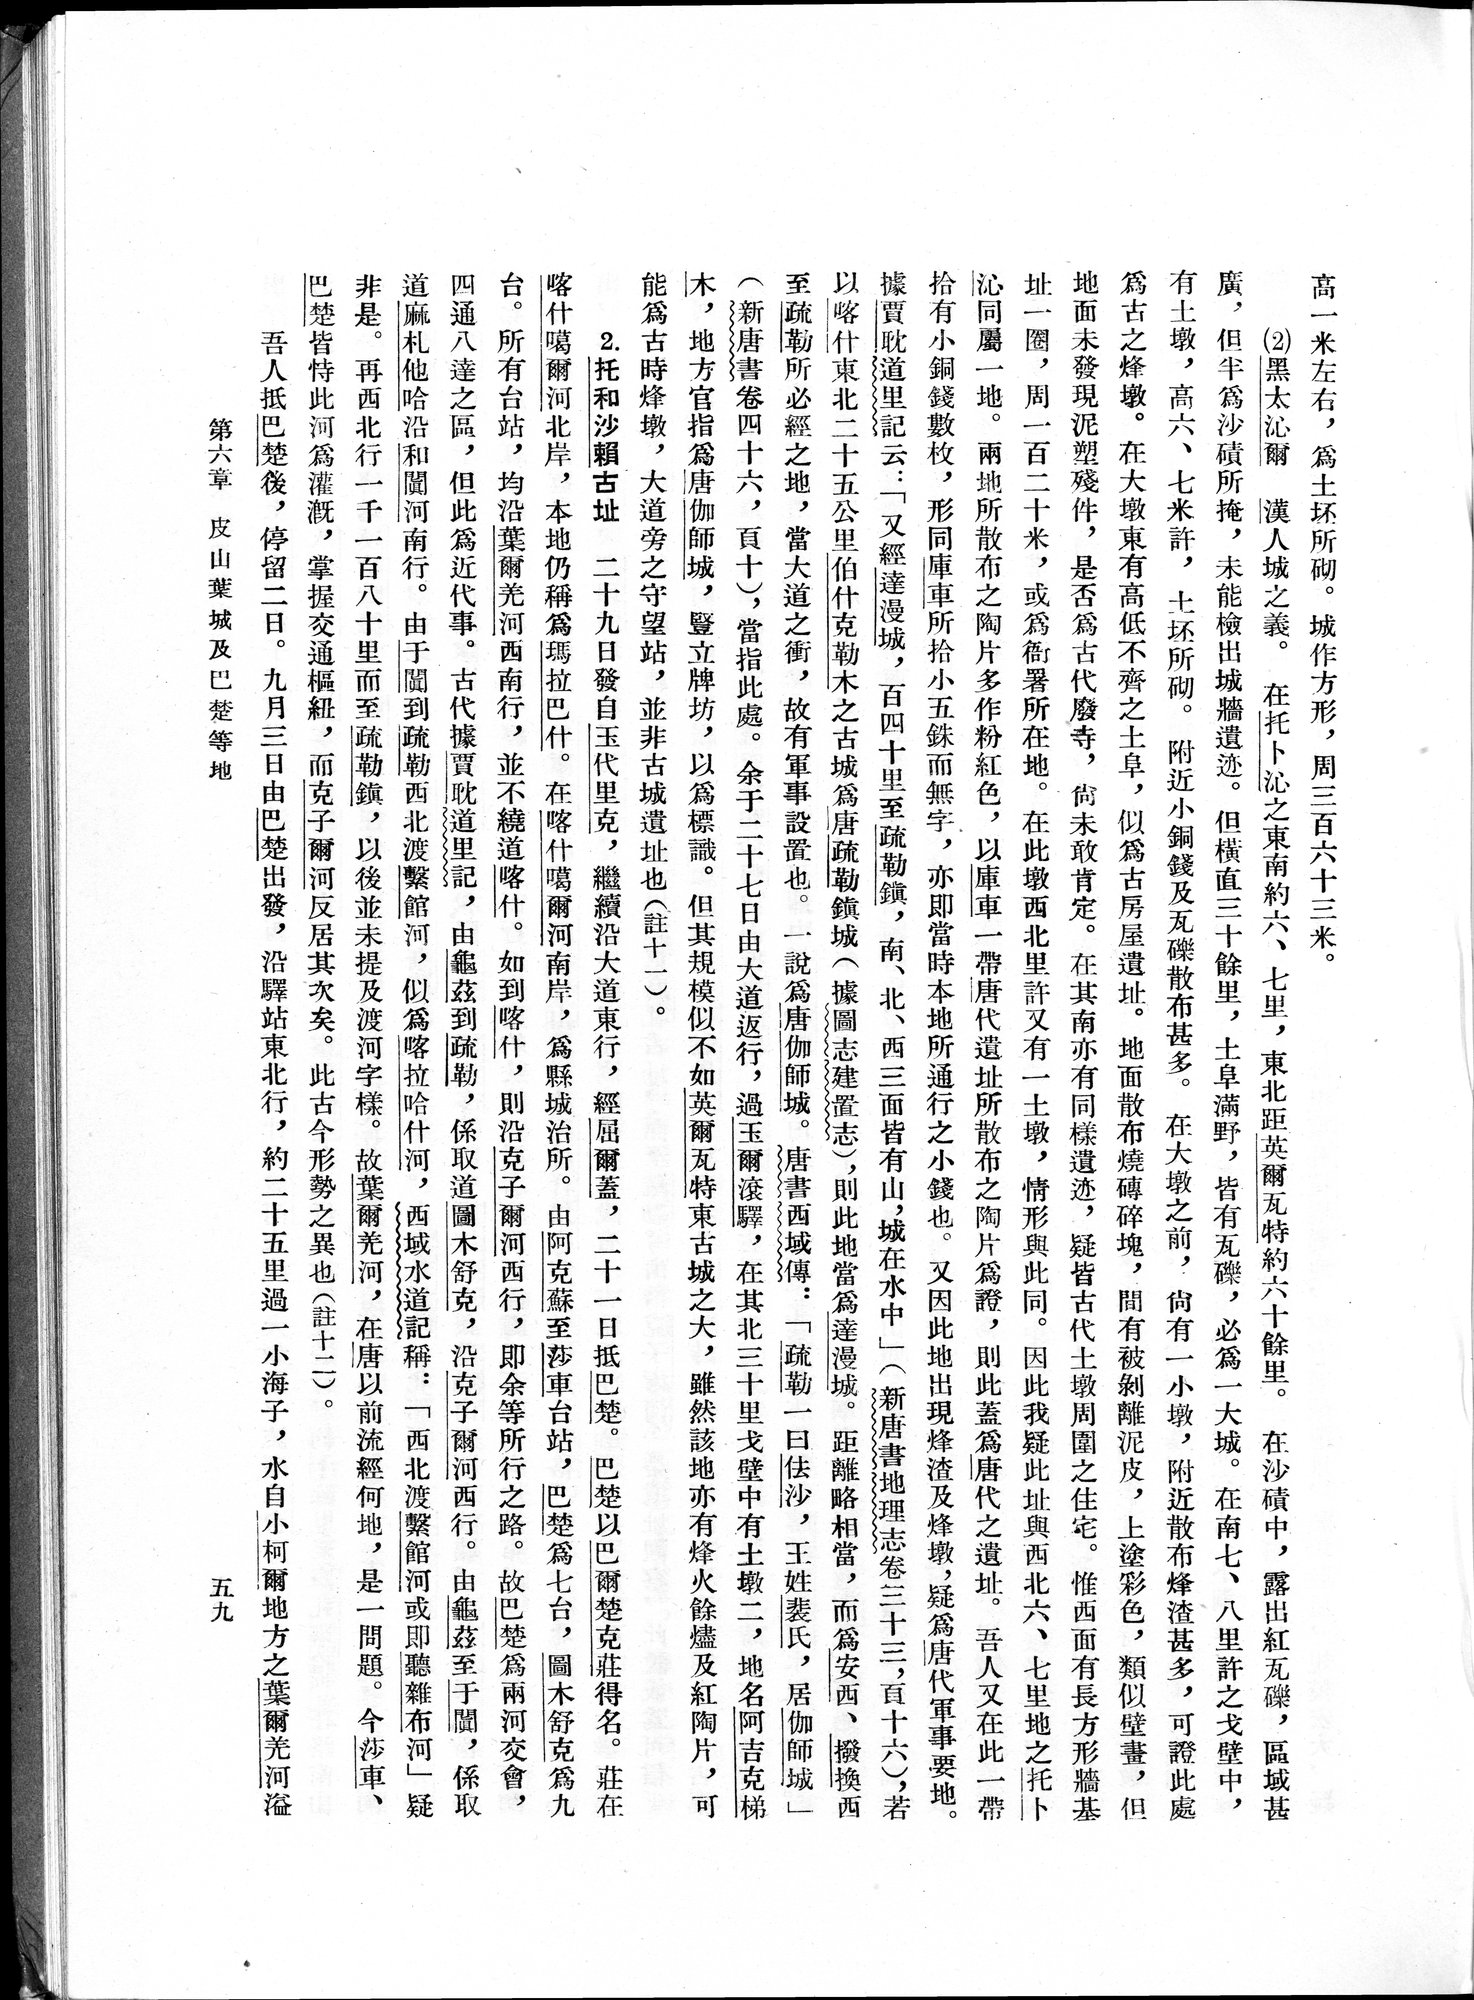 塔里木盆地考古記 : vol.1 / 83 ページ（白黒高解像度画像）